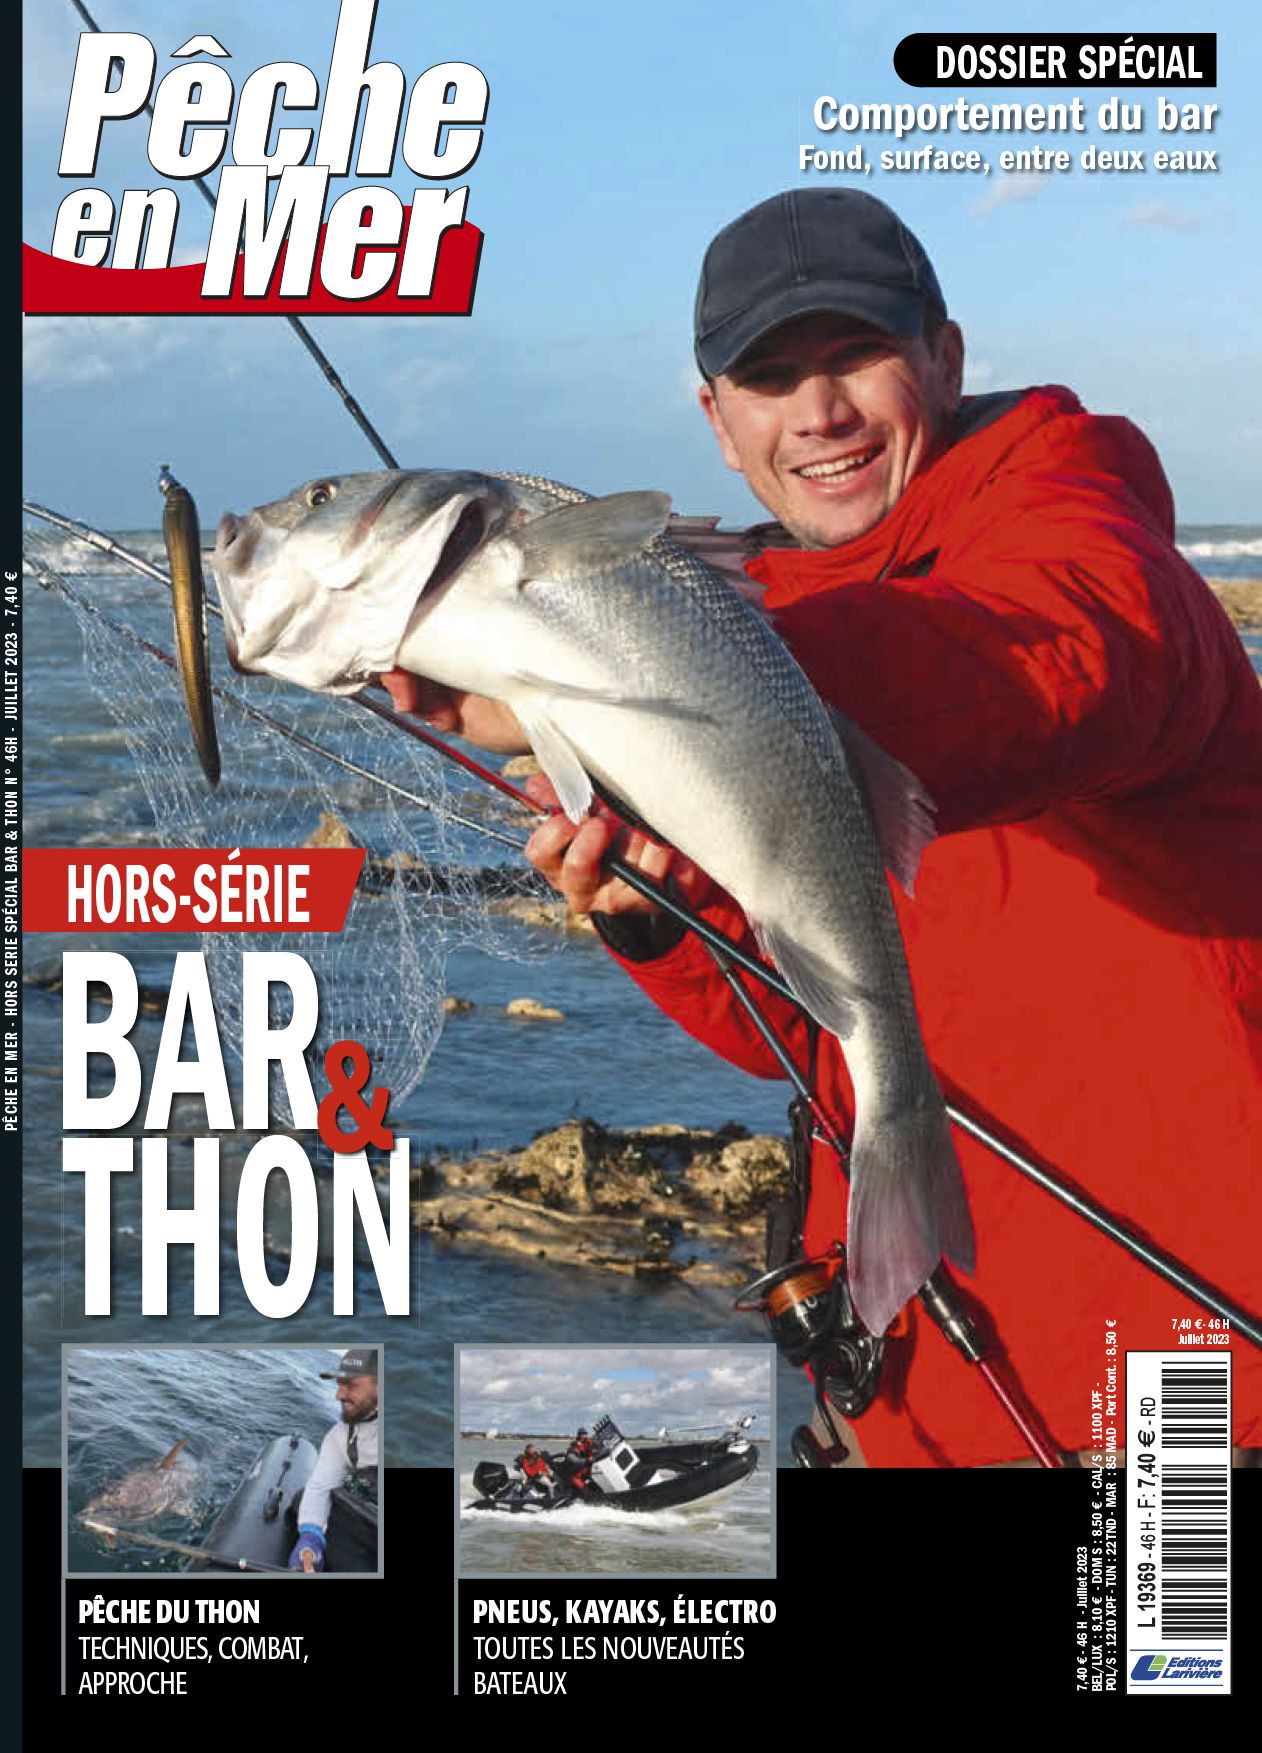 Abonnement magazine Pêche en mer - Boutique Larivière